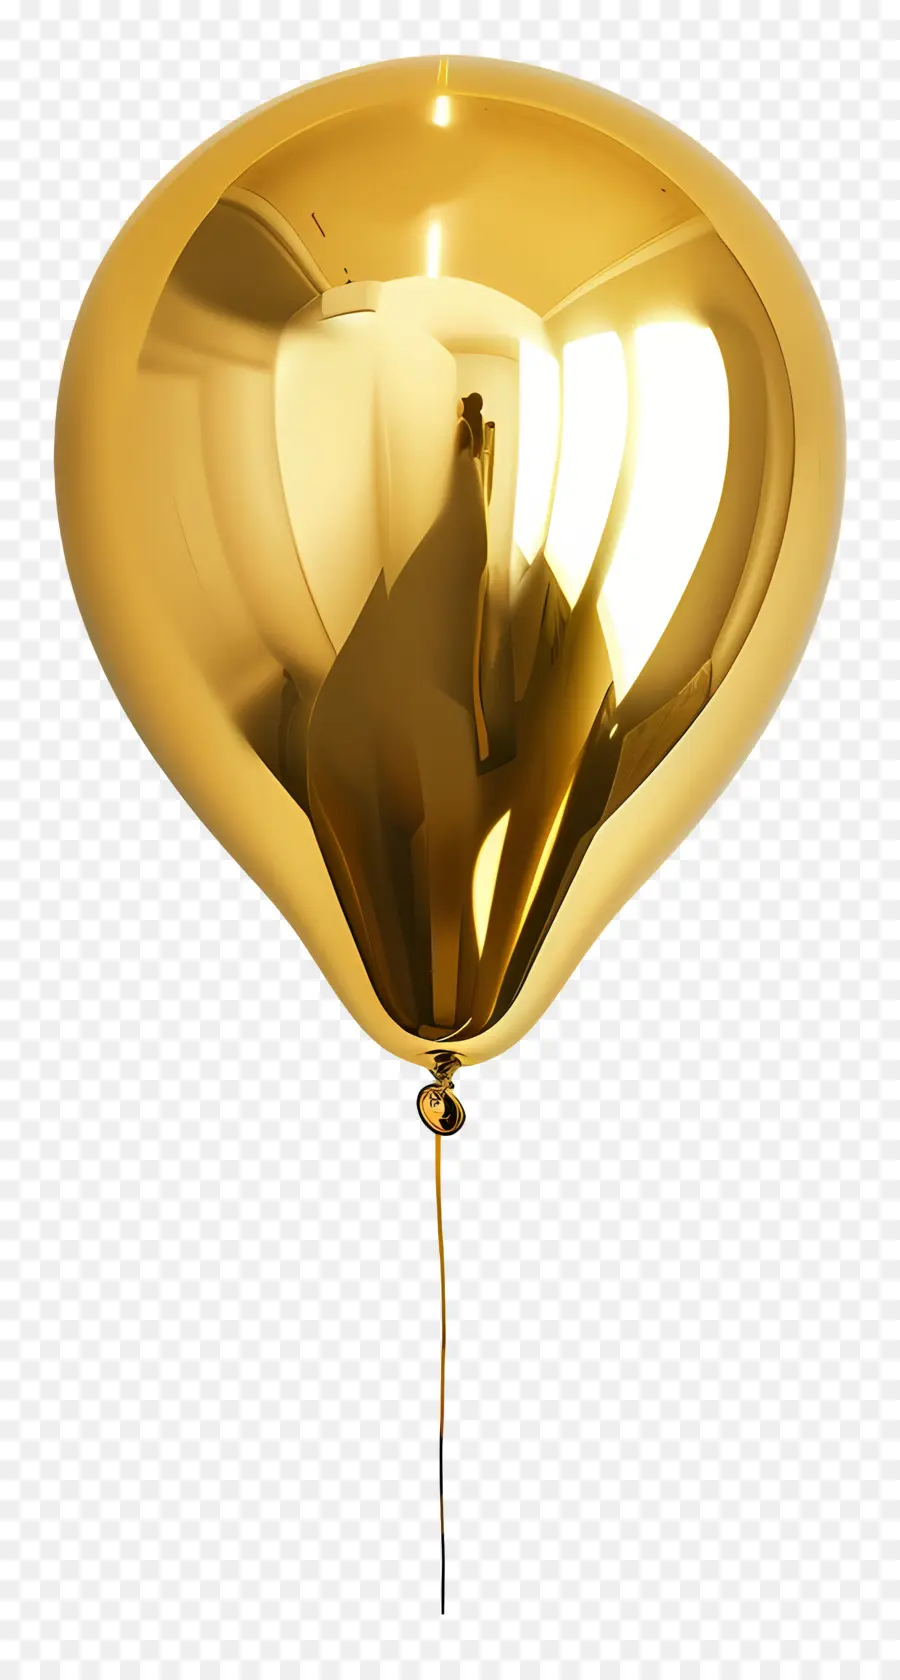 vàng bóng - Khinh khí cầu nổi trong không gian đen